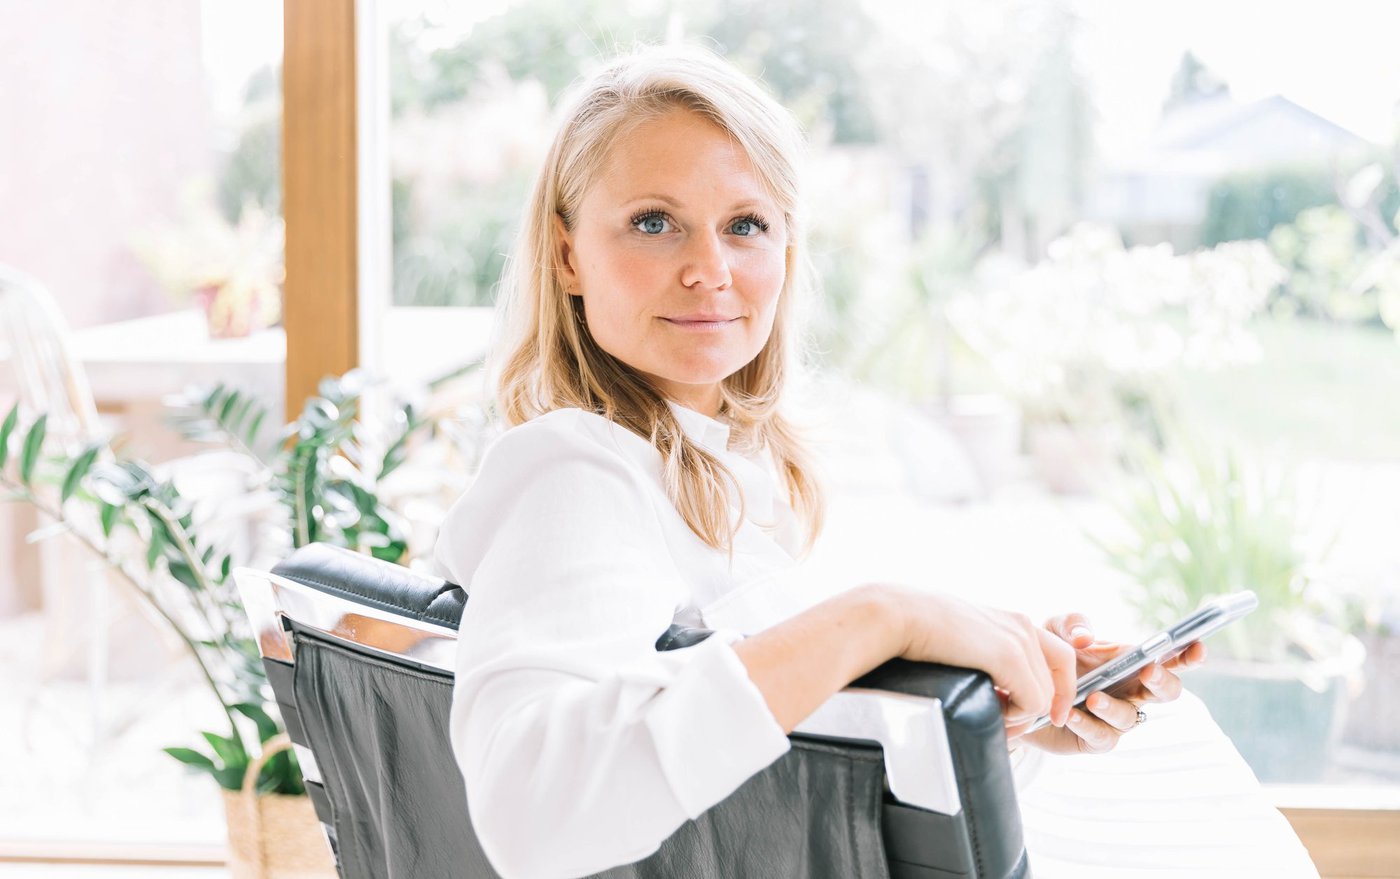 Anna Santens helpt ondernemers bij het implementeren van een lichter leven: “Maak het nu en dan eens stil, de wereld is al luid en druk genoeg”